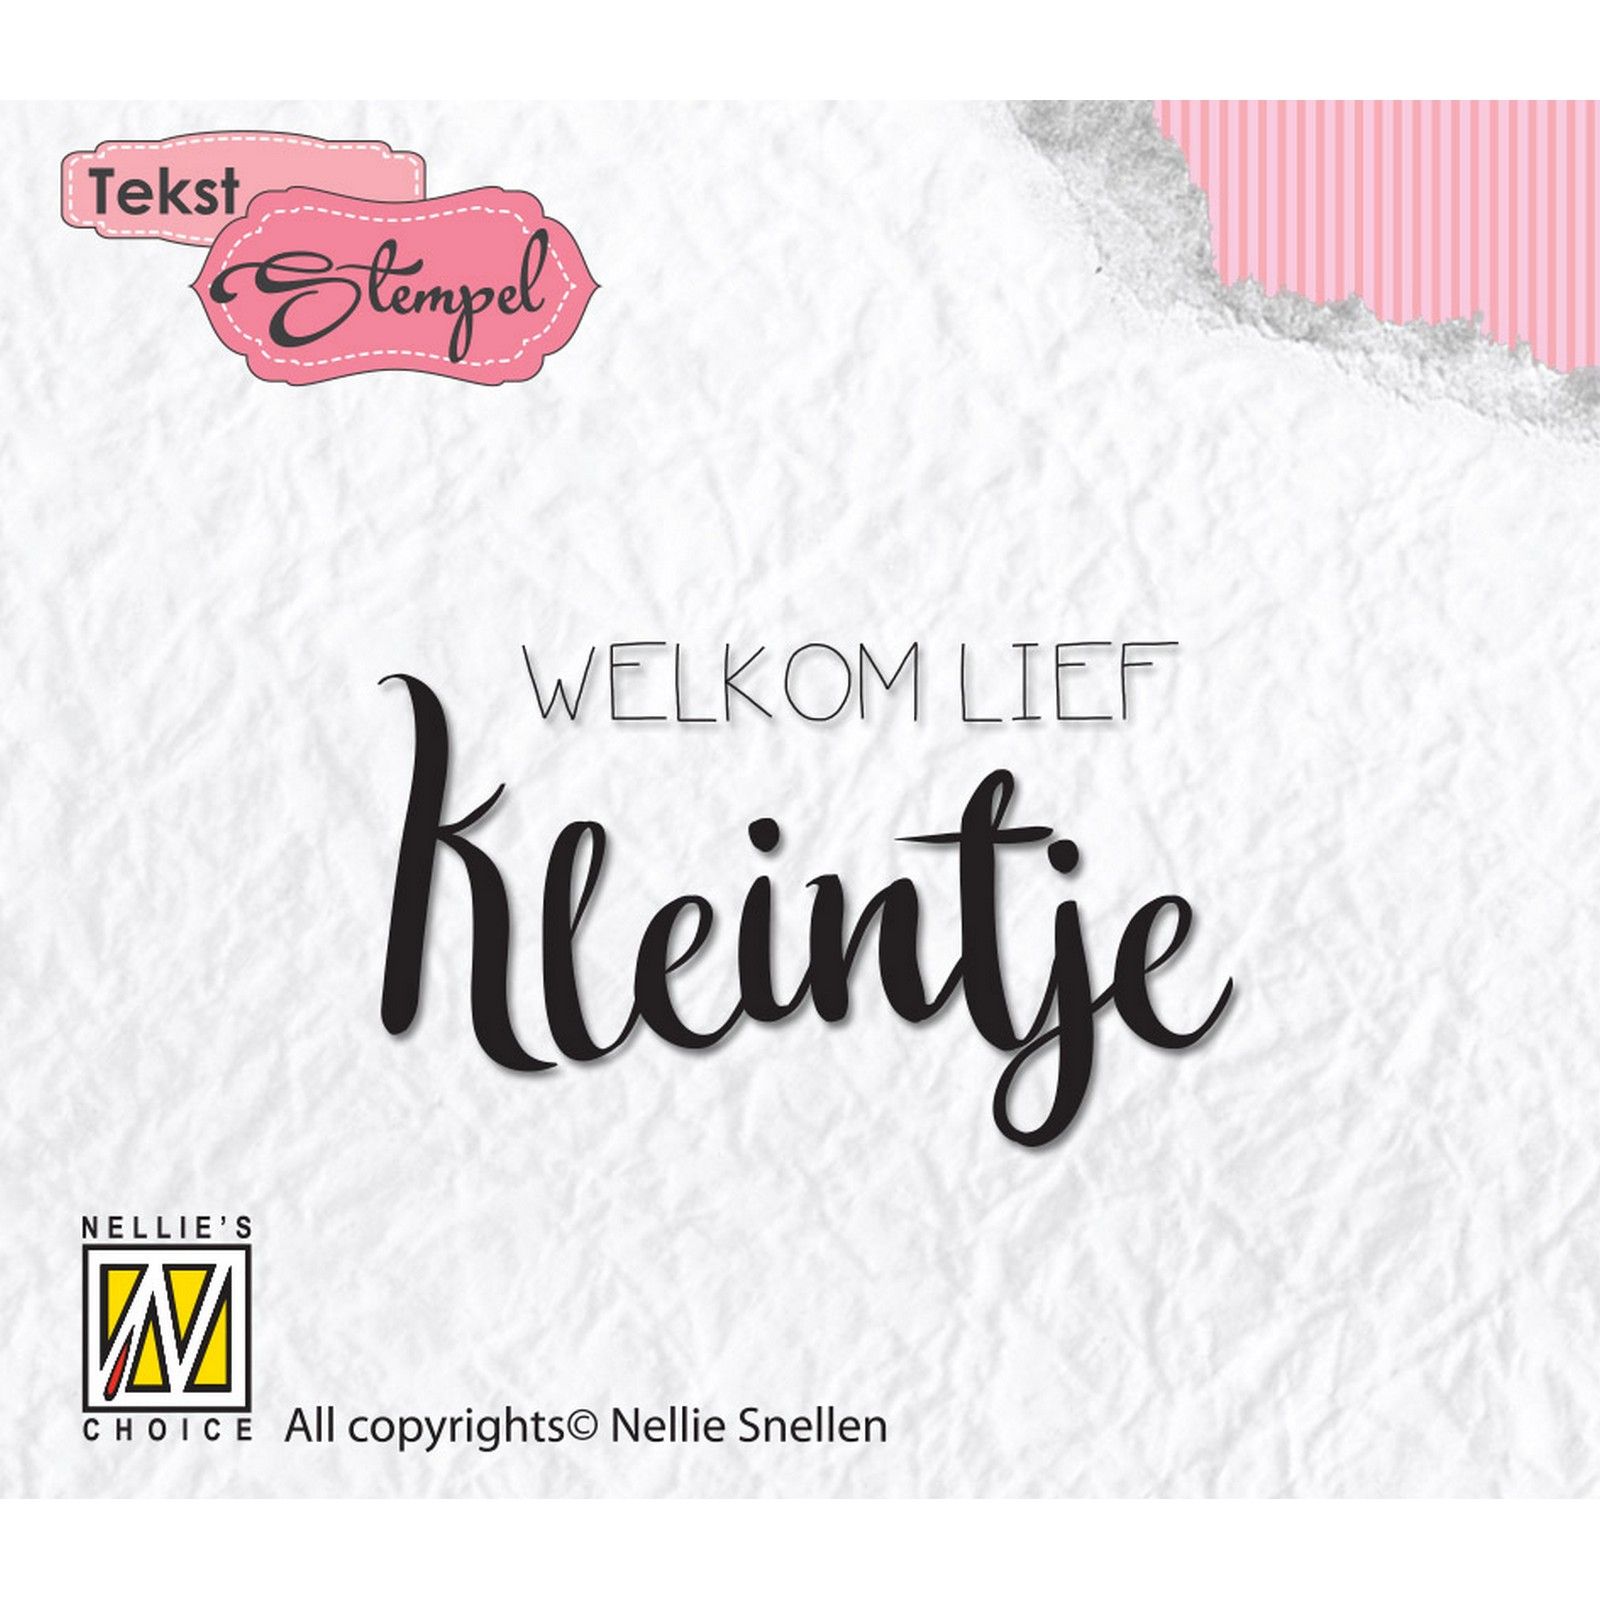 Nellie's Choice • Clear Stempel Nederlands Welkom Lief Kleintje